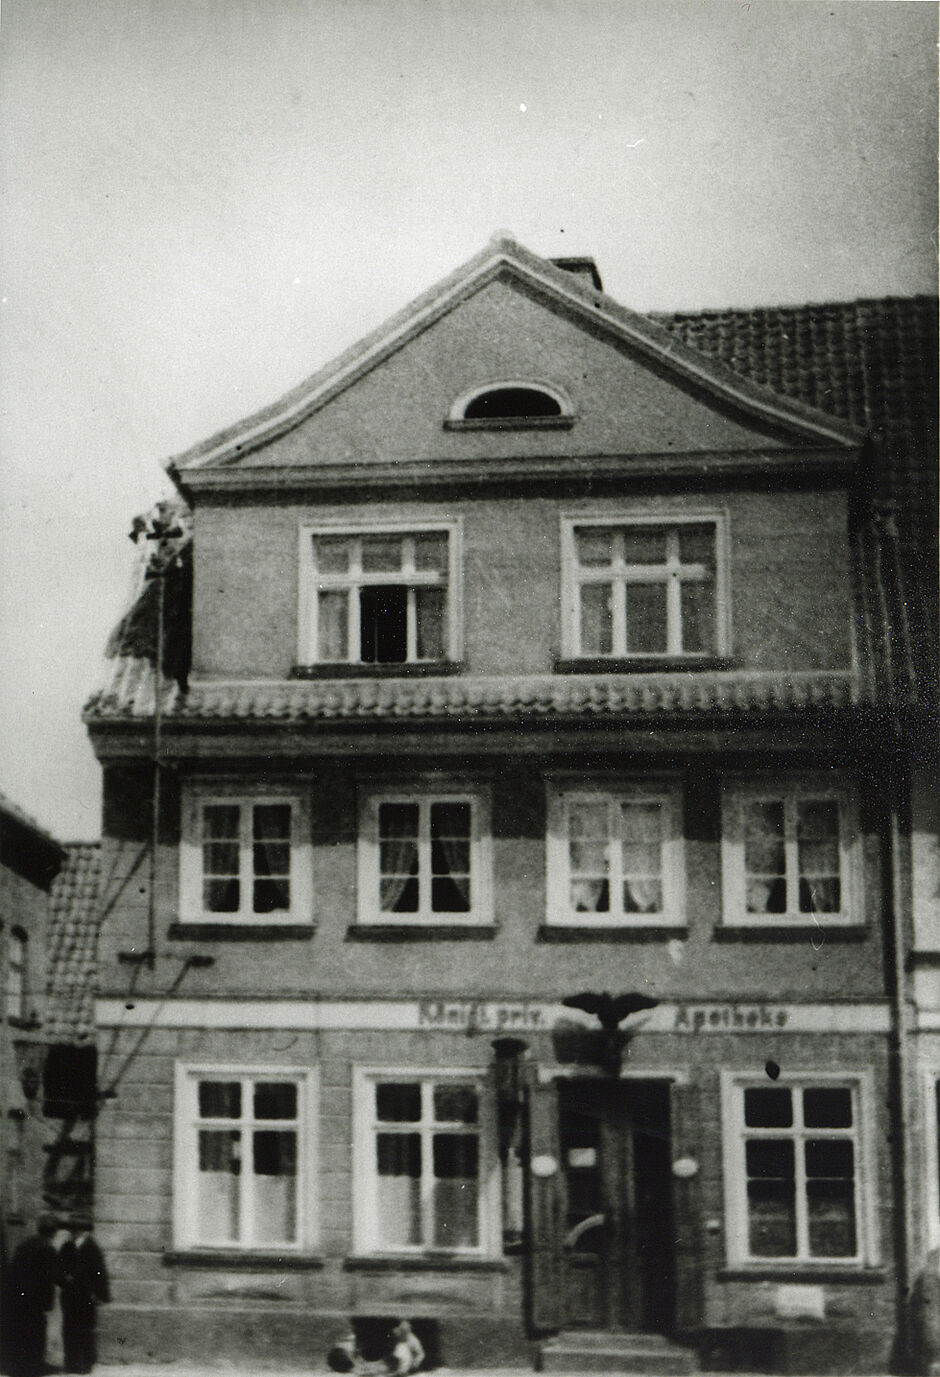 Aufnahme des Gebäudes der Adler-Apotheke Schippenbeil (Sępopol), ca. 1900-1914 (Copyright: Bildarchiv Ostpreußen, www.bildarchiv-ostpreussen.de; Nr. 101411. 